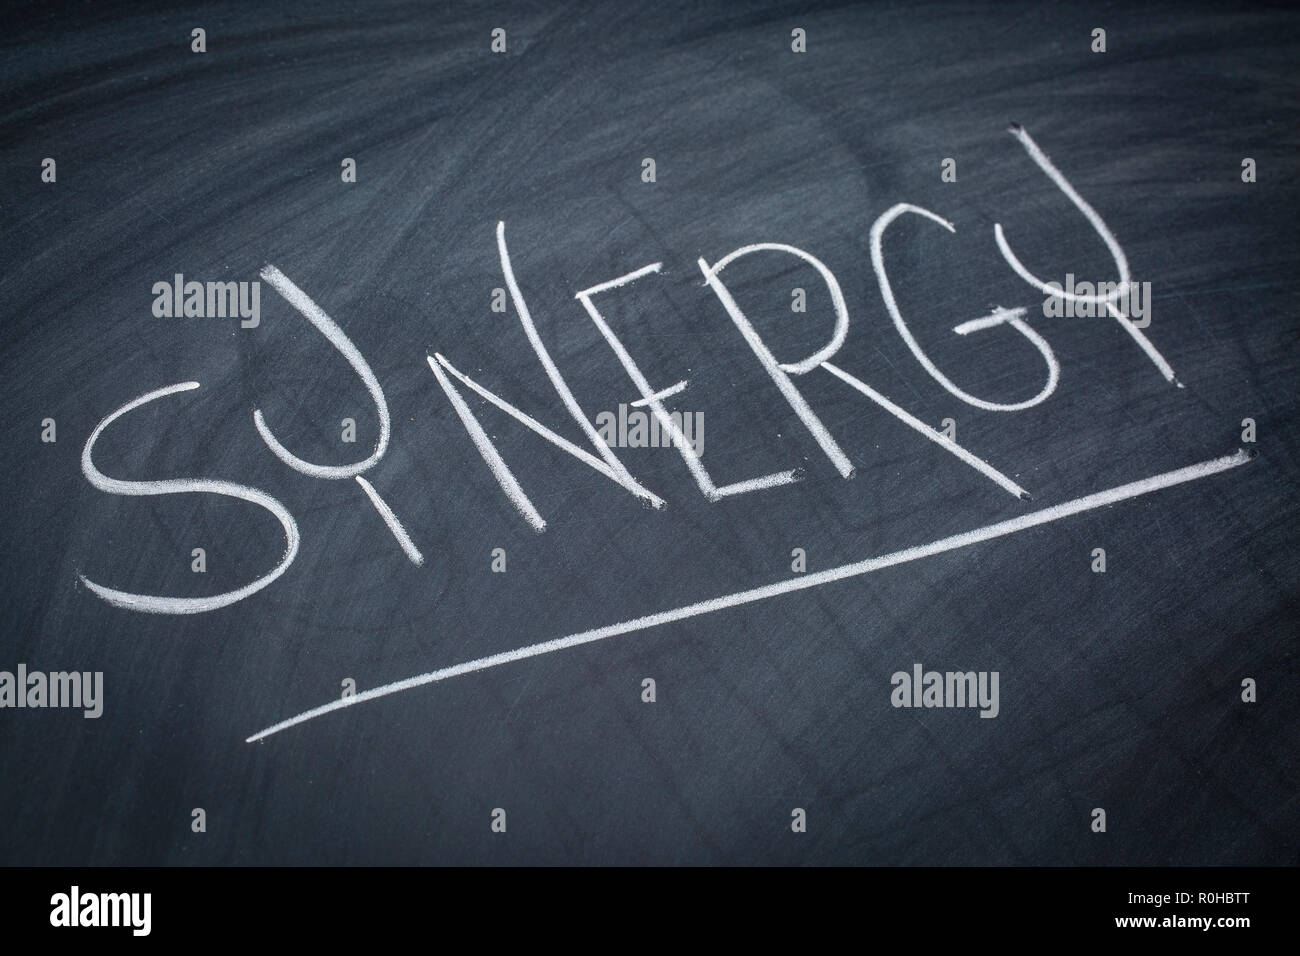 Synergie mot dans l'écriture à la craie blanche sur un tableau noir Banque D'Images